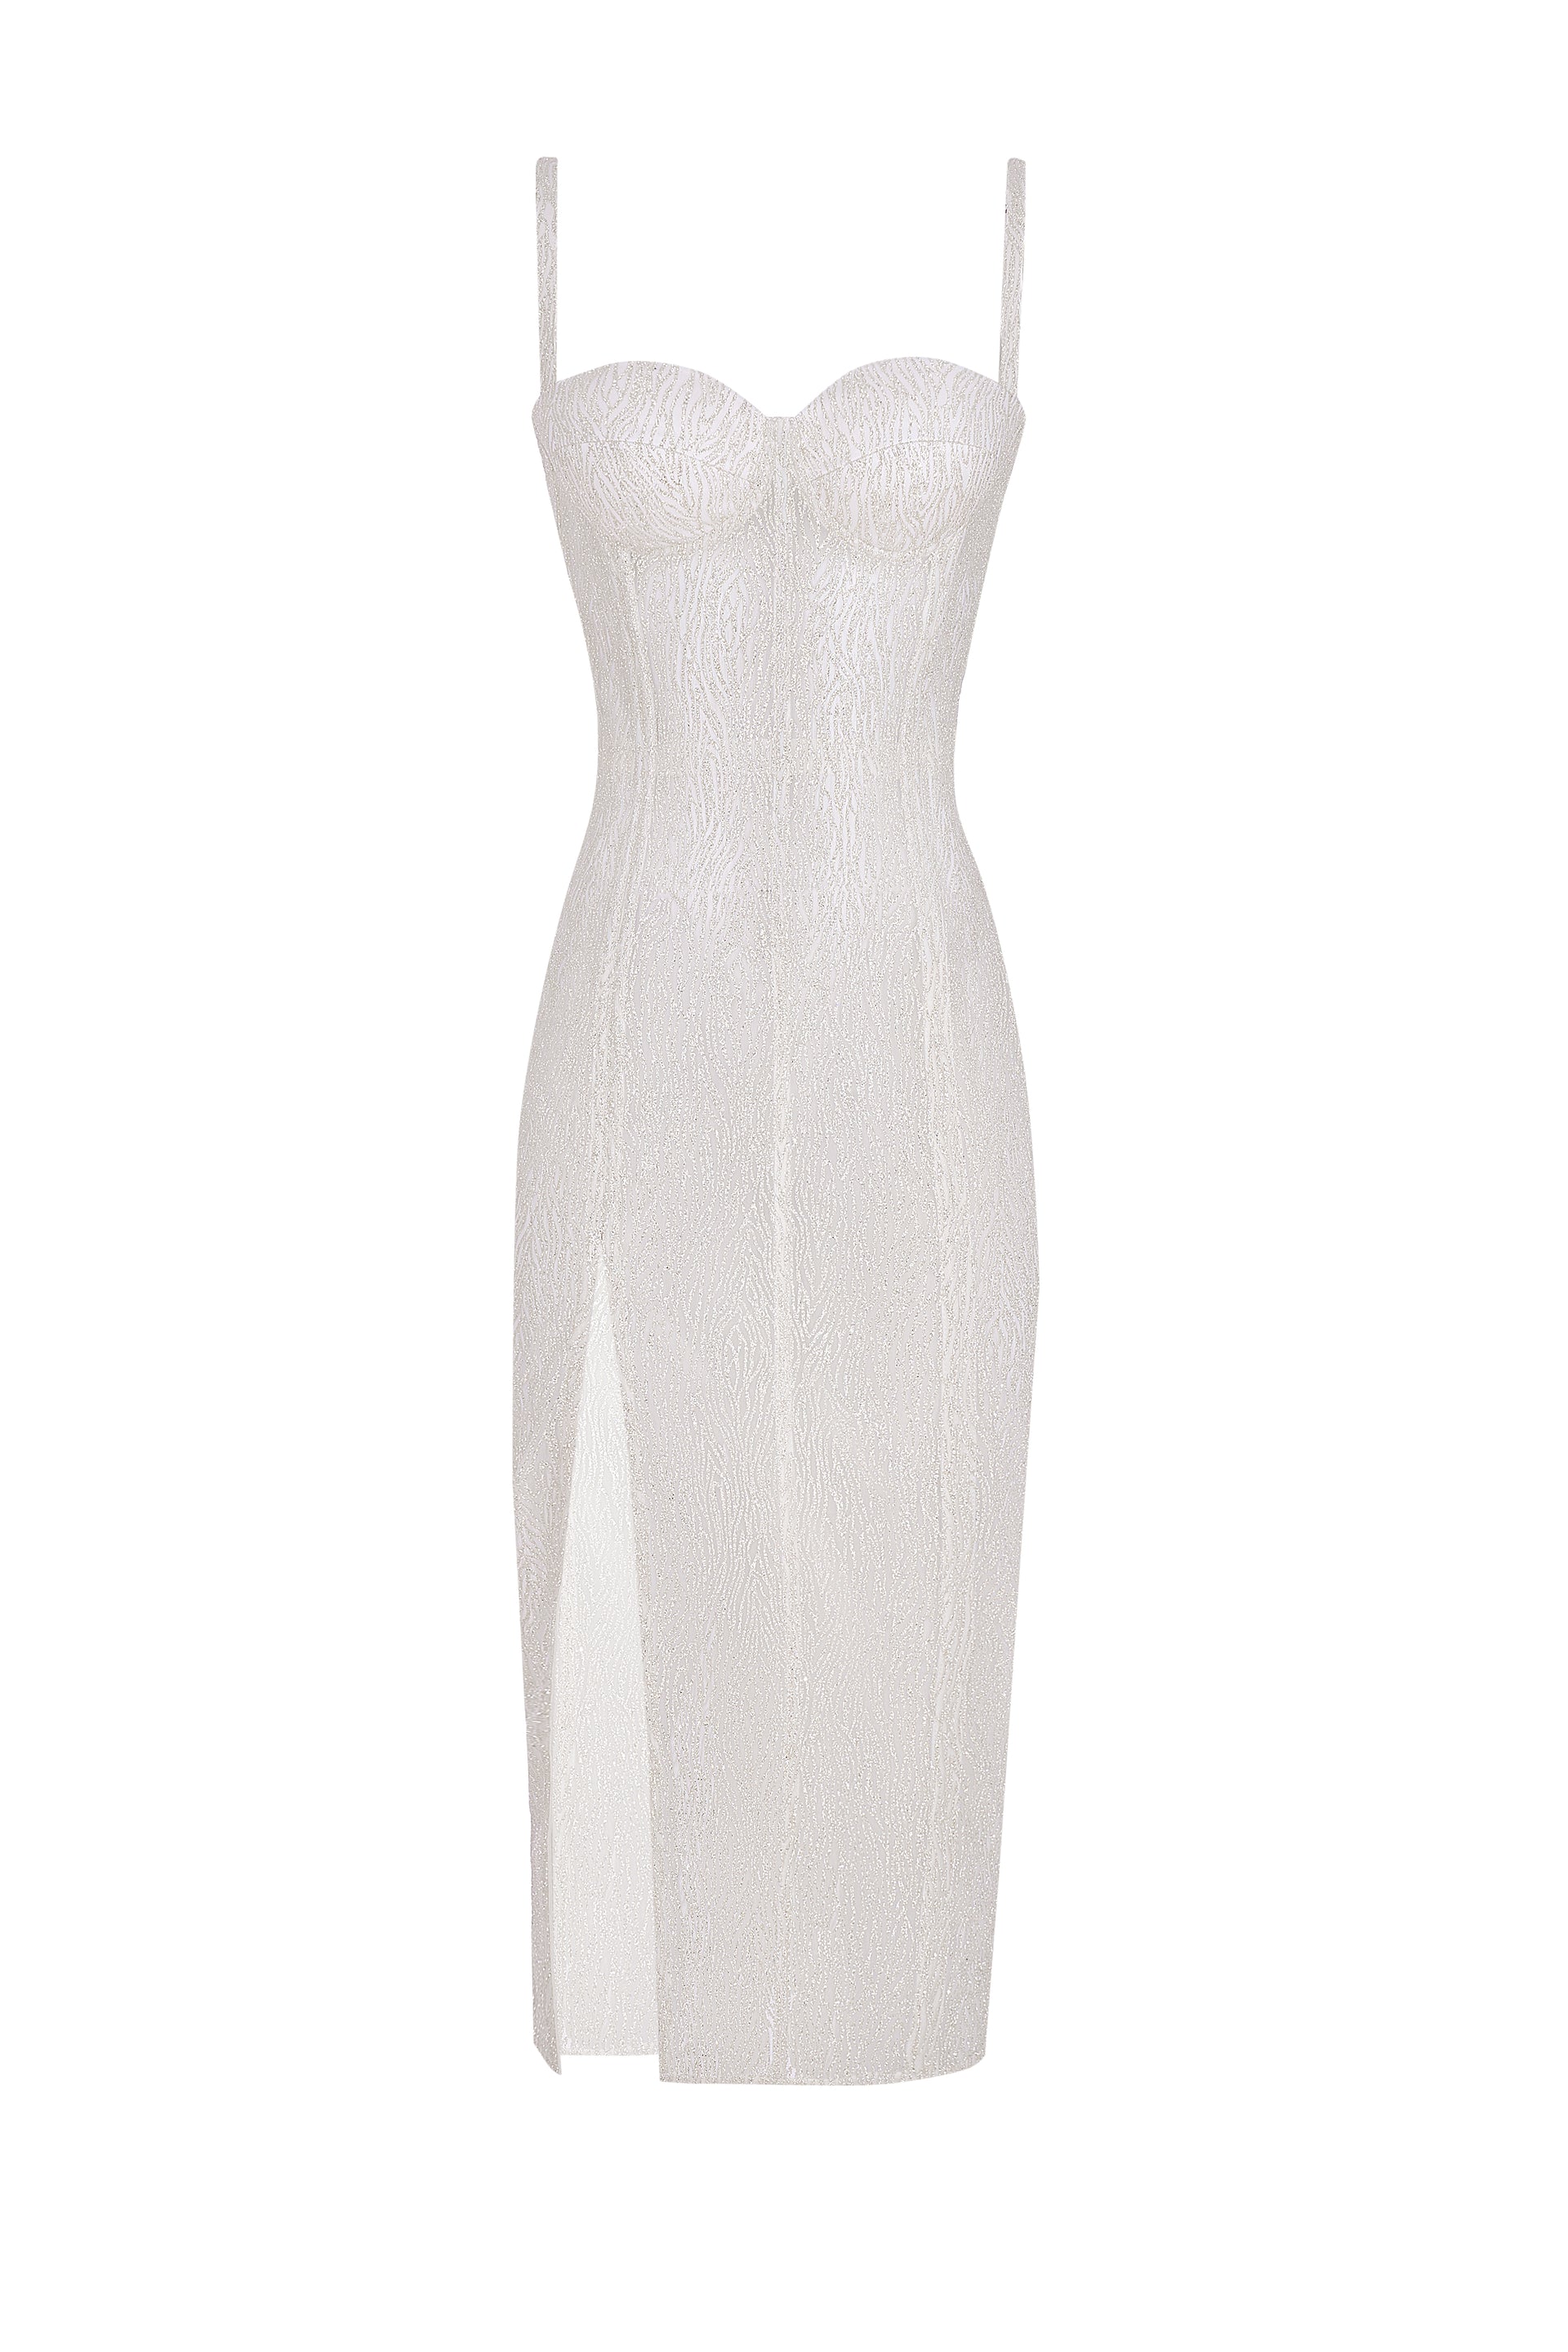 Shiny white midi corset dress